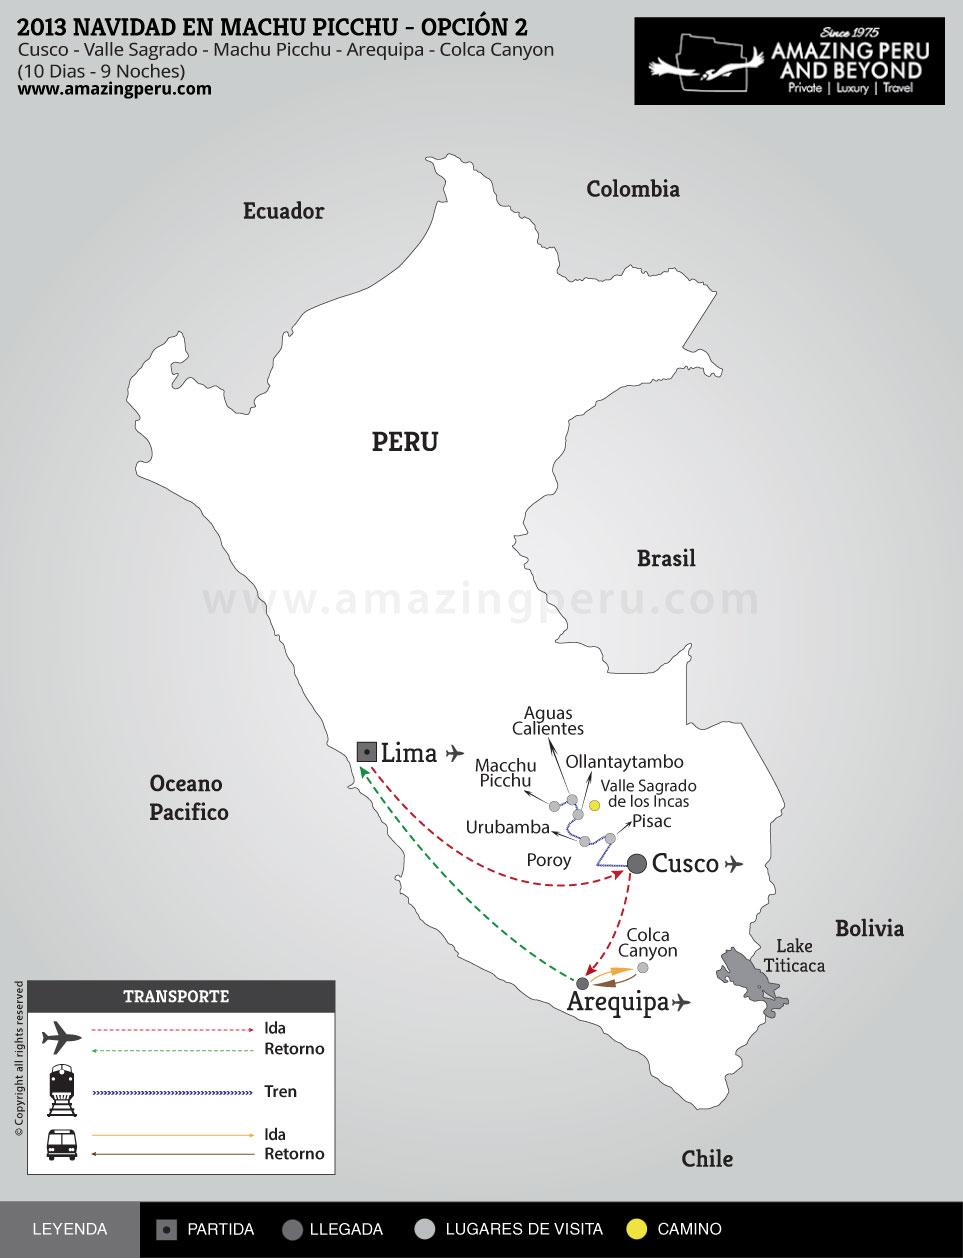 2022 Tour de Navidad en Machu Picchu - Opción 2